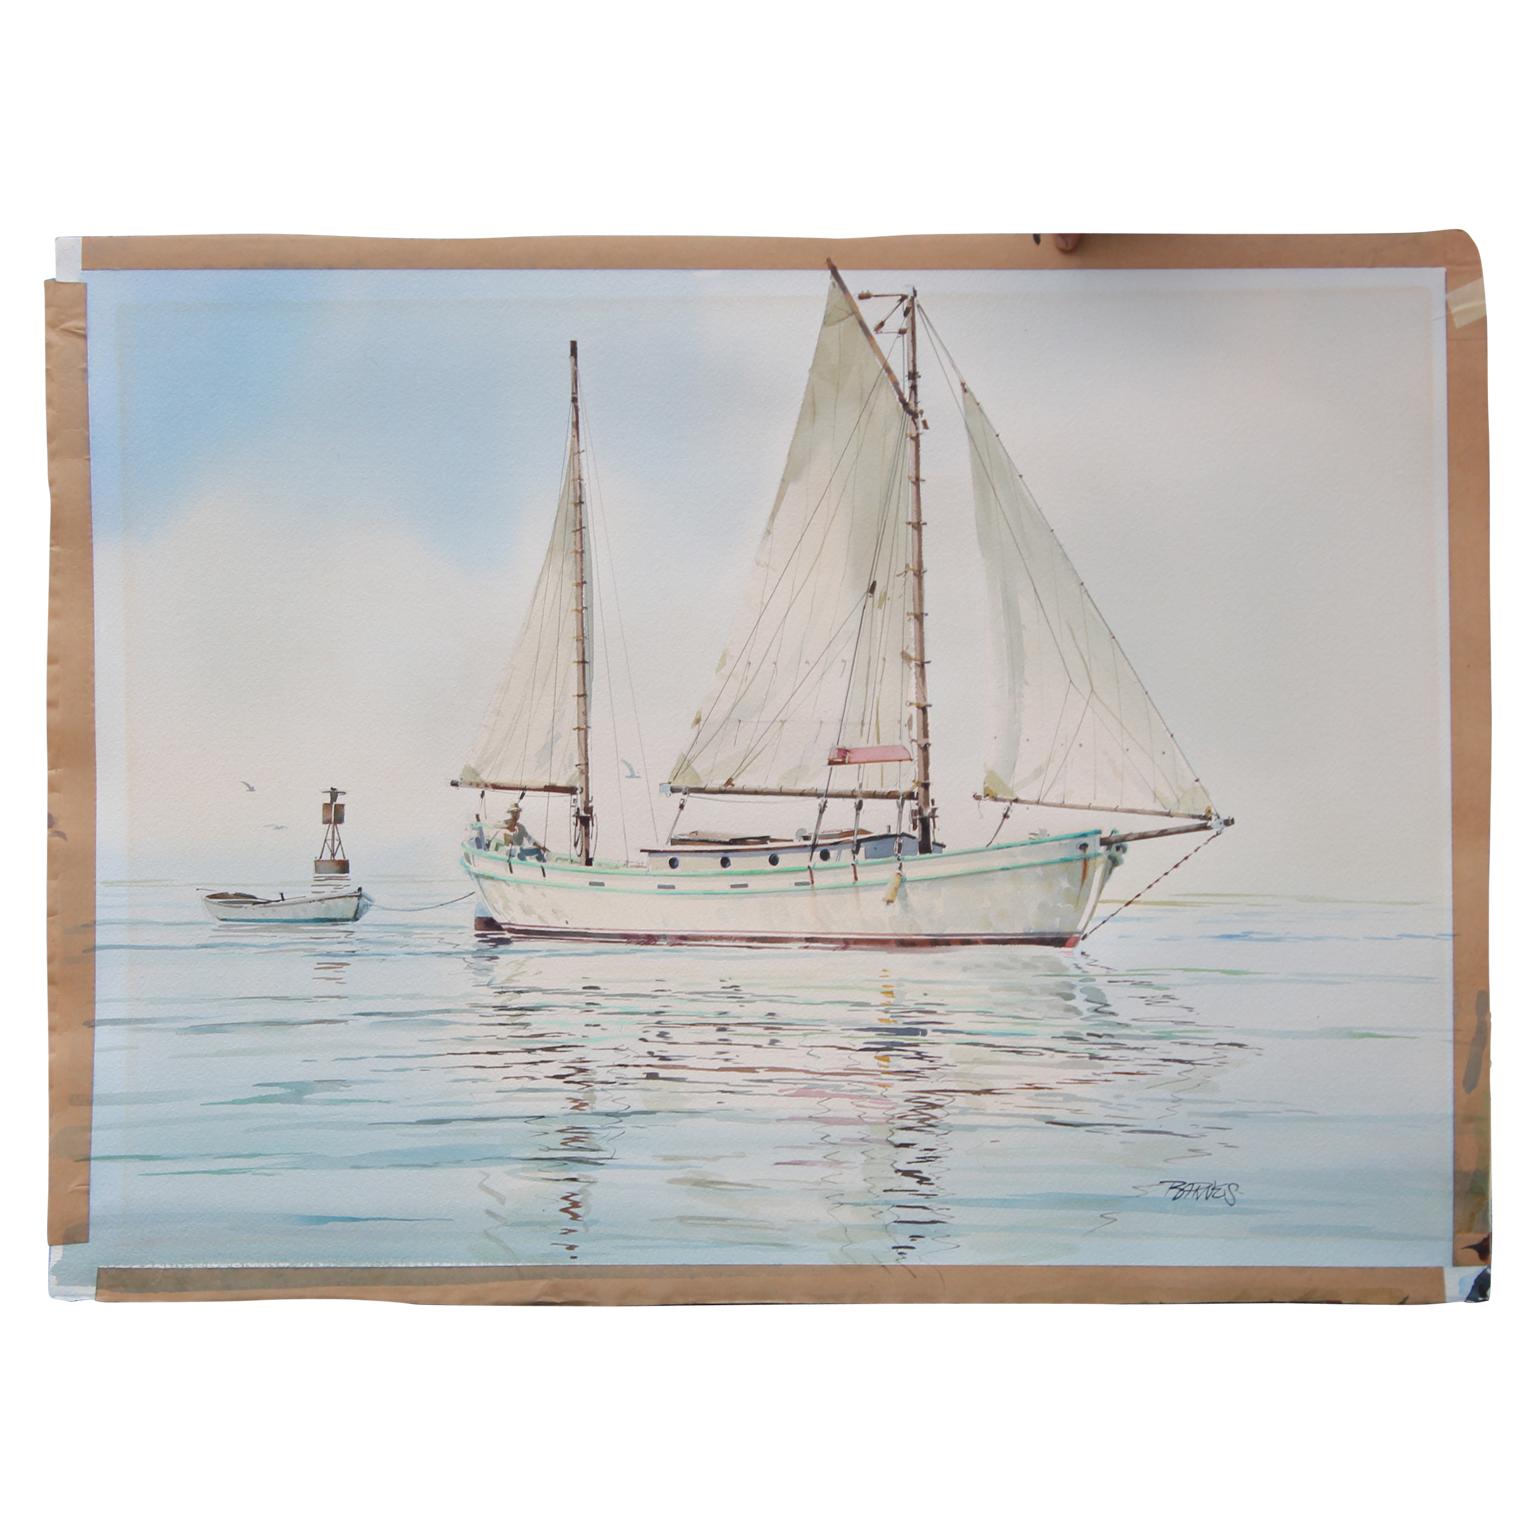 Al Barnes Landscape Art - Realistic Watercolor Painting of a Sailboat